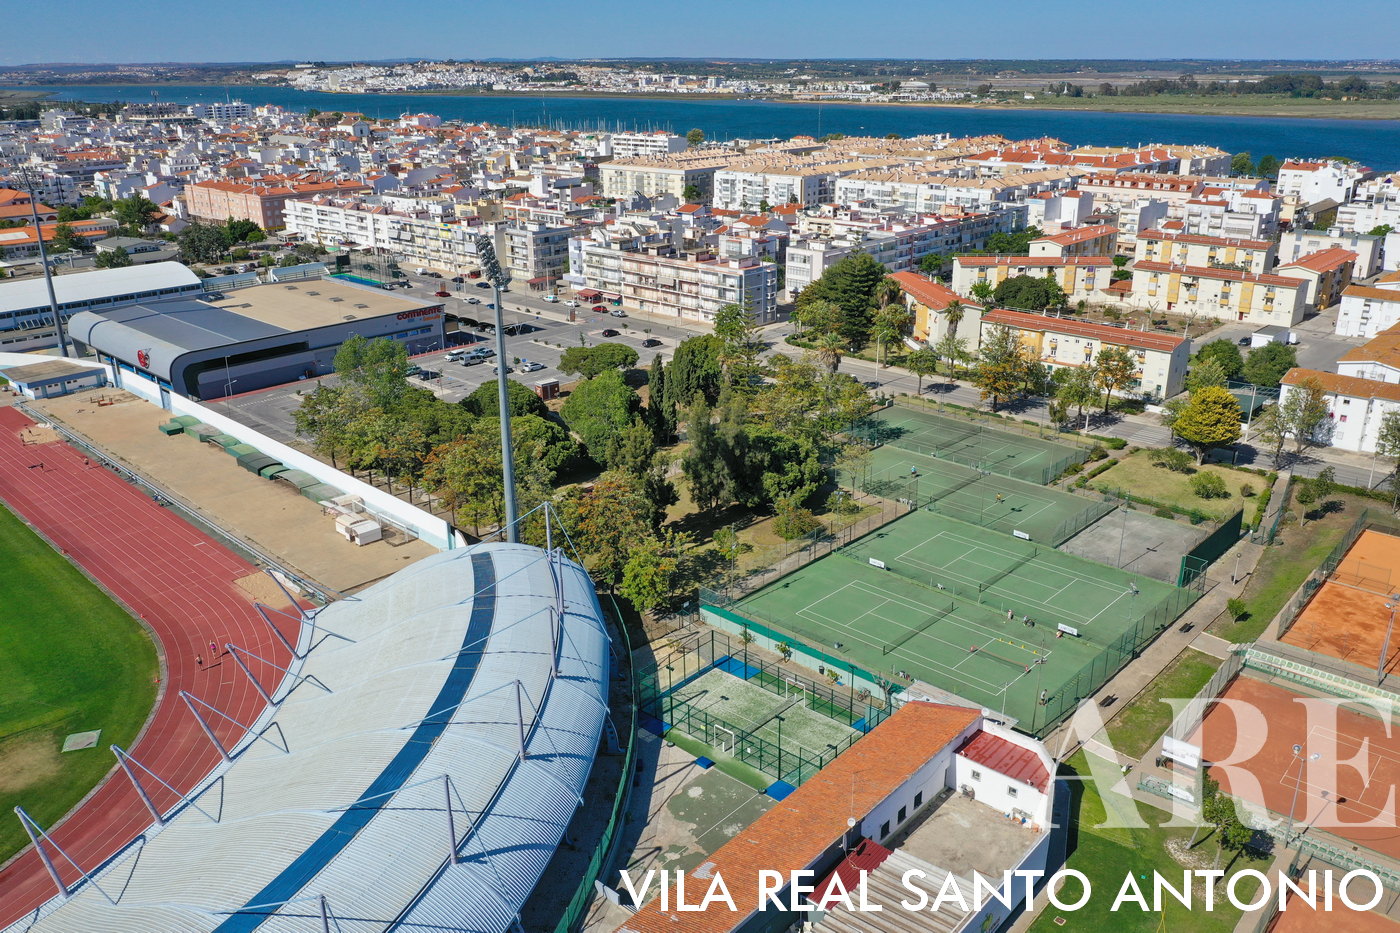 Vista Panorâmica de Vila Real de Santo António a partir da Zona Desportiva